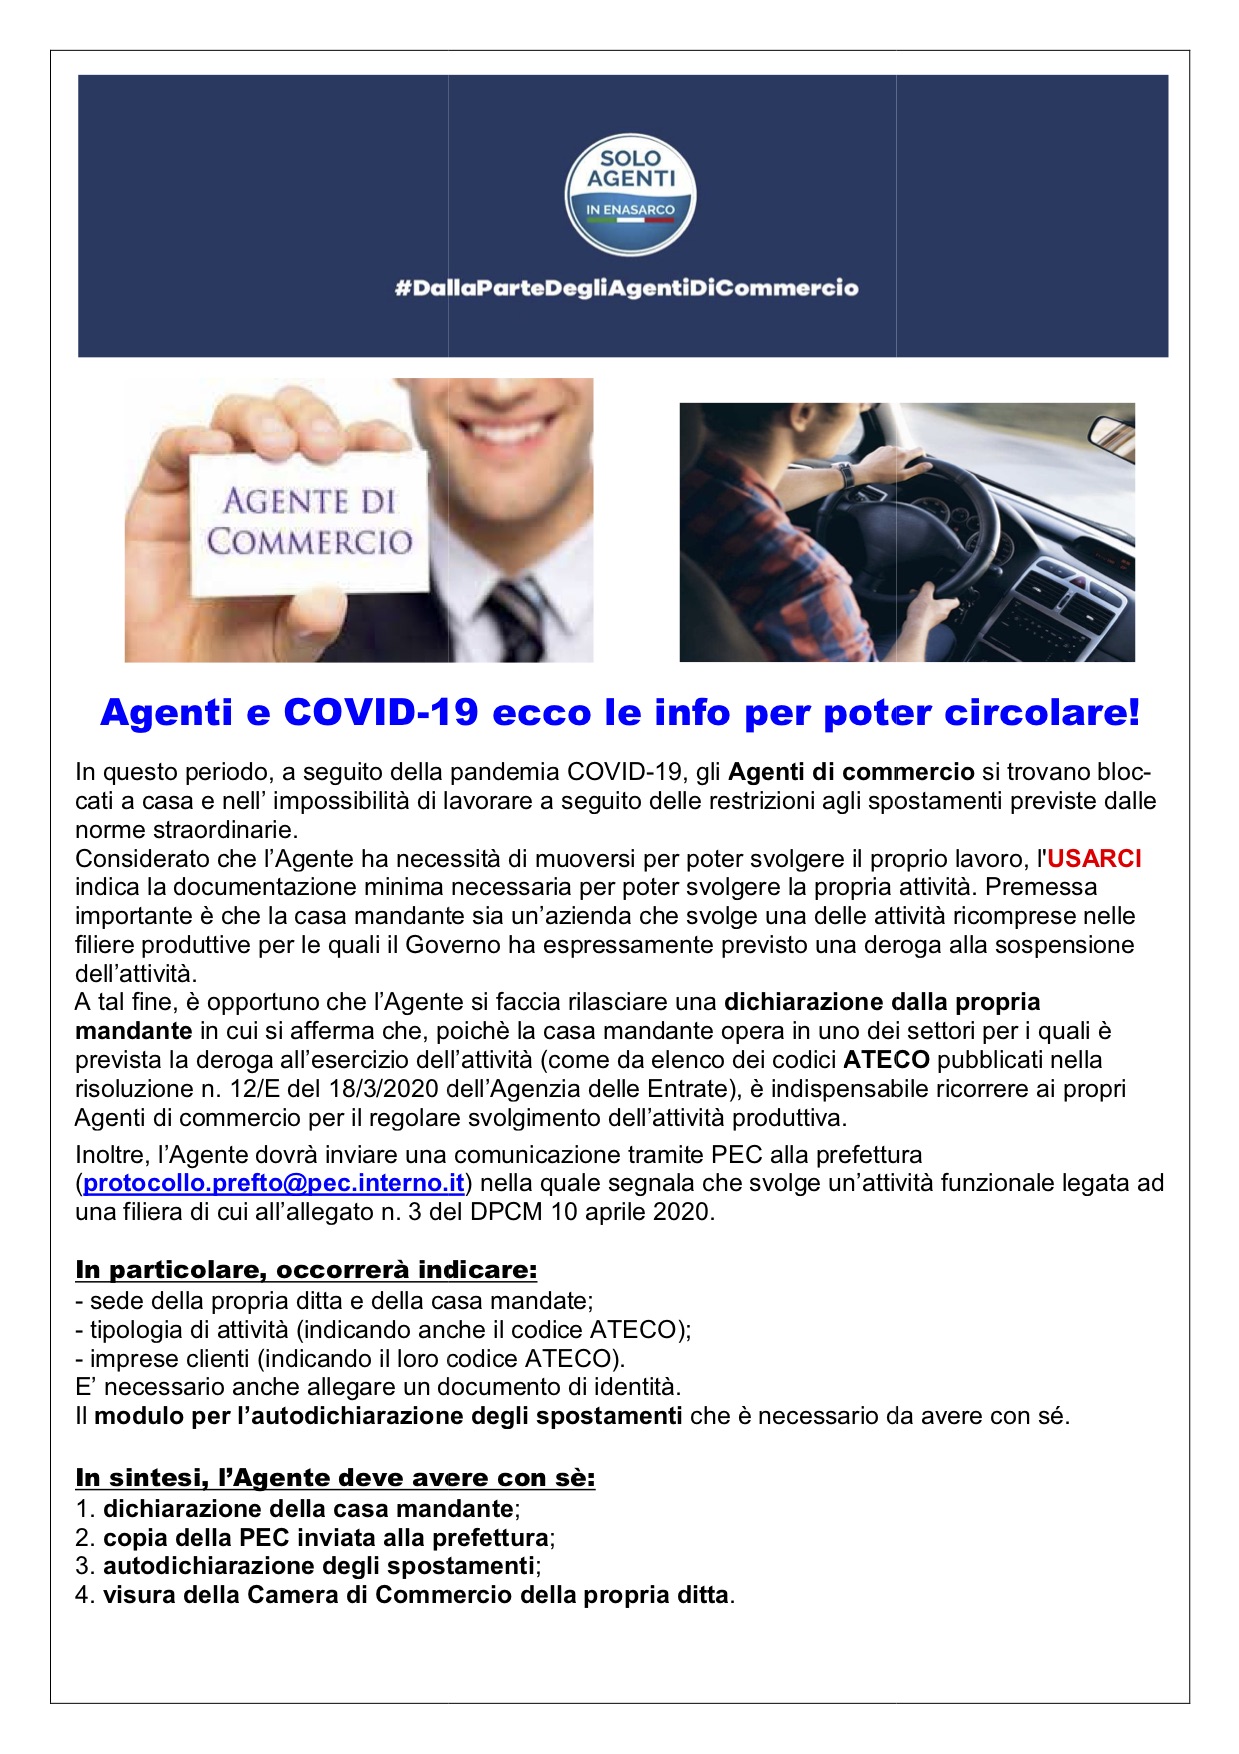 AGENTI DI COMMERCIO E COVID-19